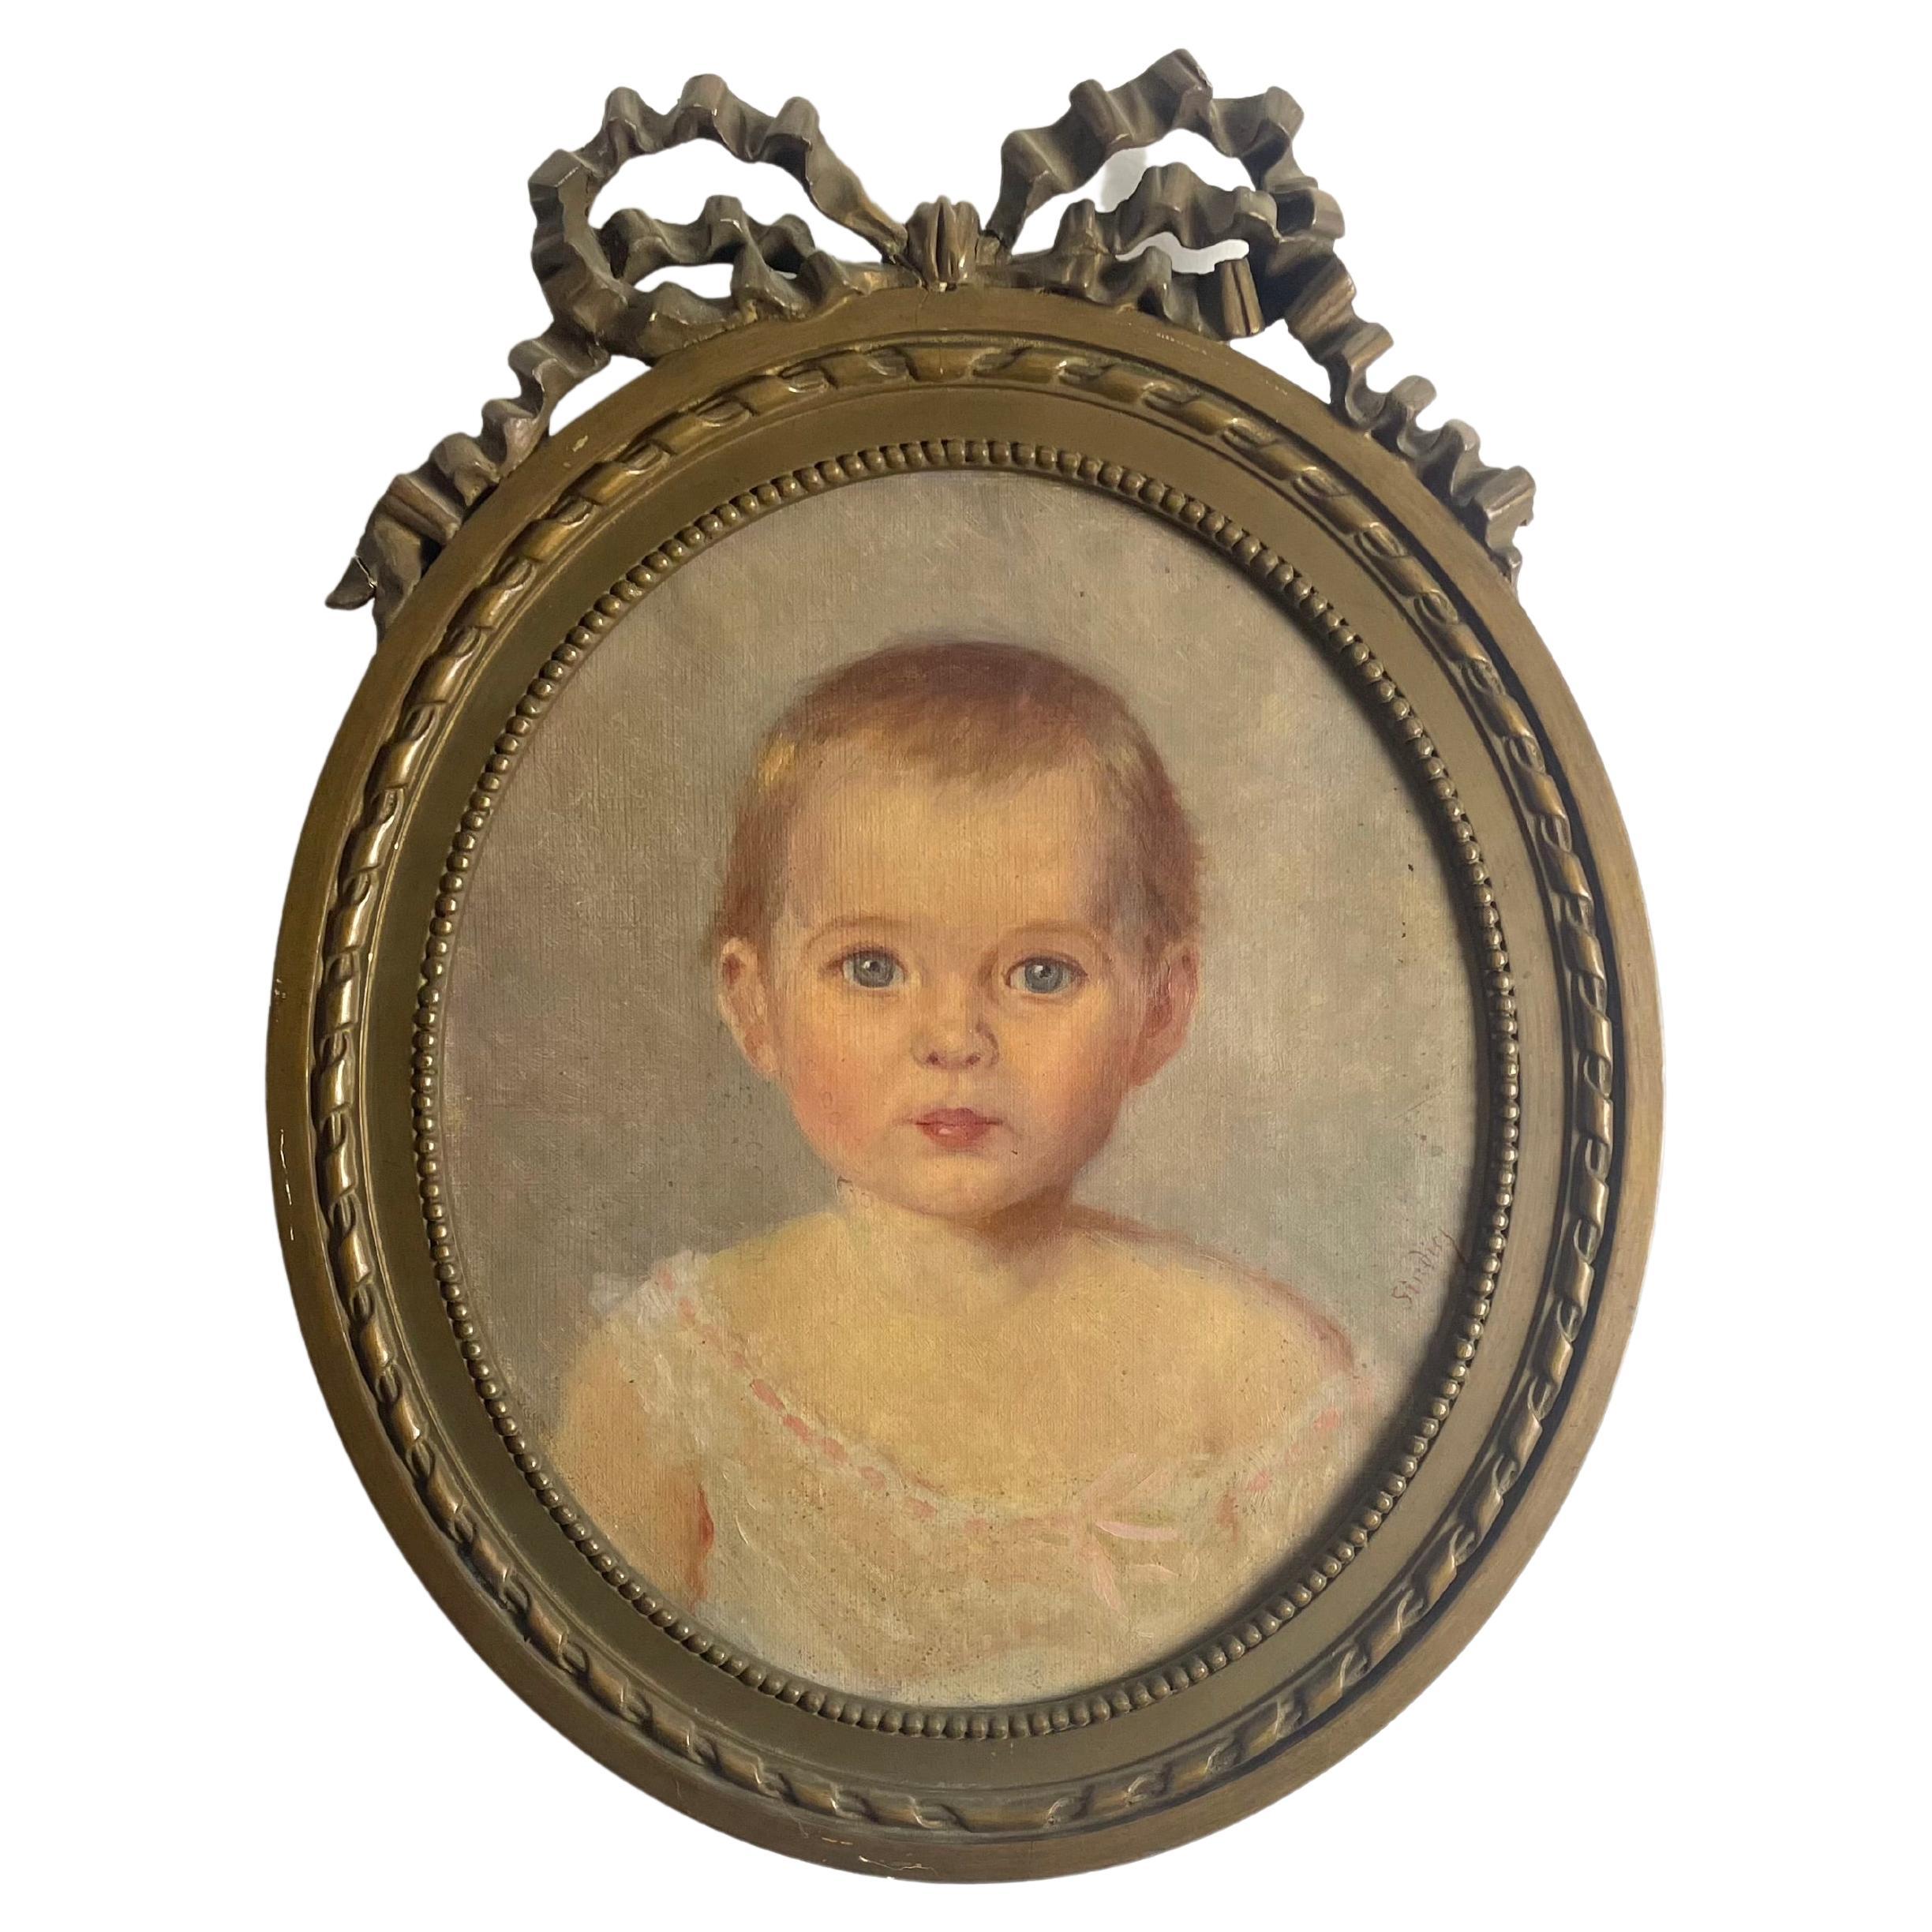 Portrait d'un bébé/un jeune enfant - Peinture - Huile sur toile - Encadrée - 19e France. 